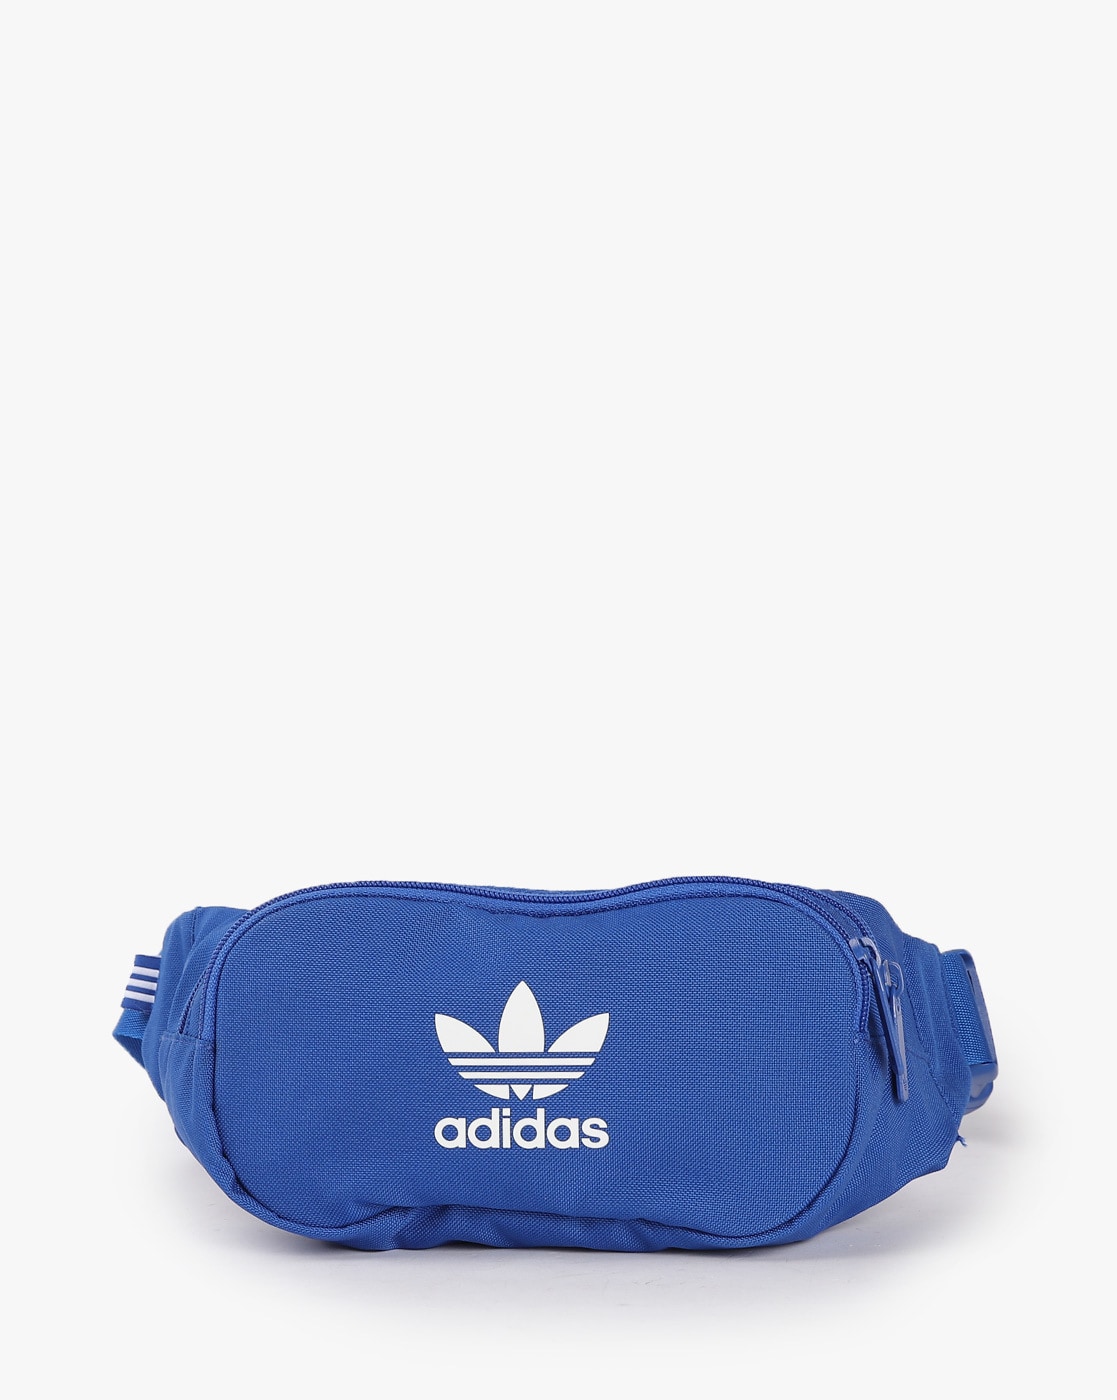 Adidas Waist Bag For Men | lupon.gov.ph